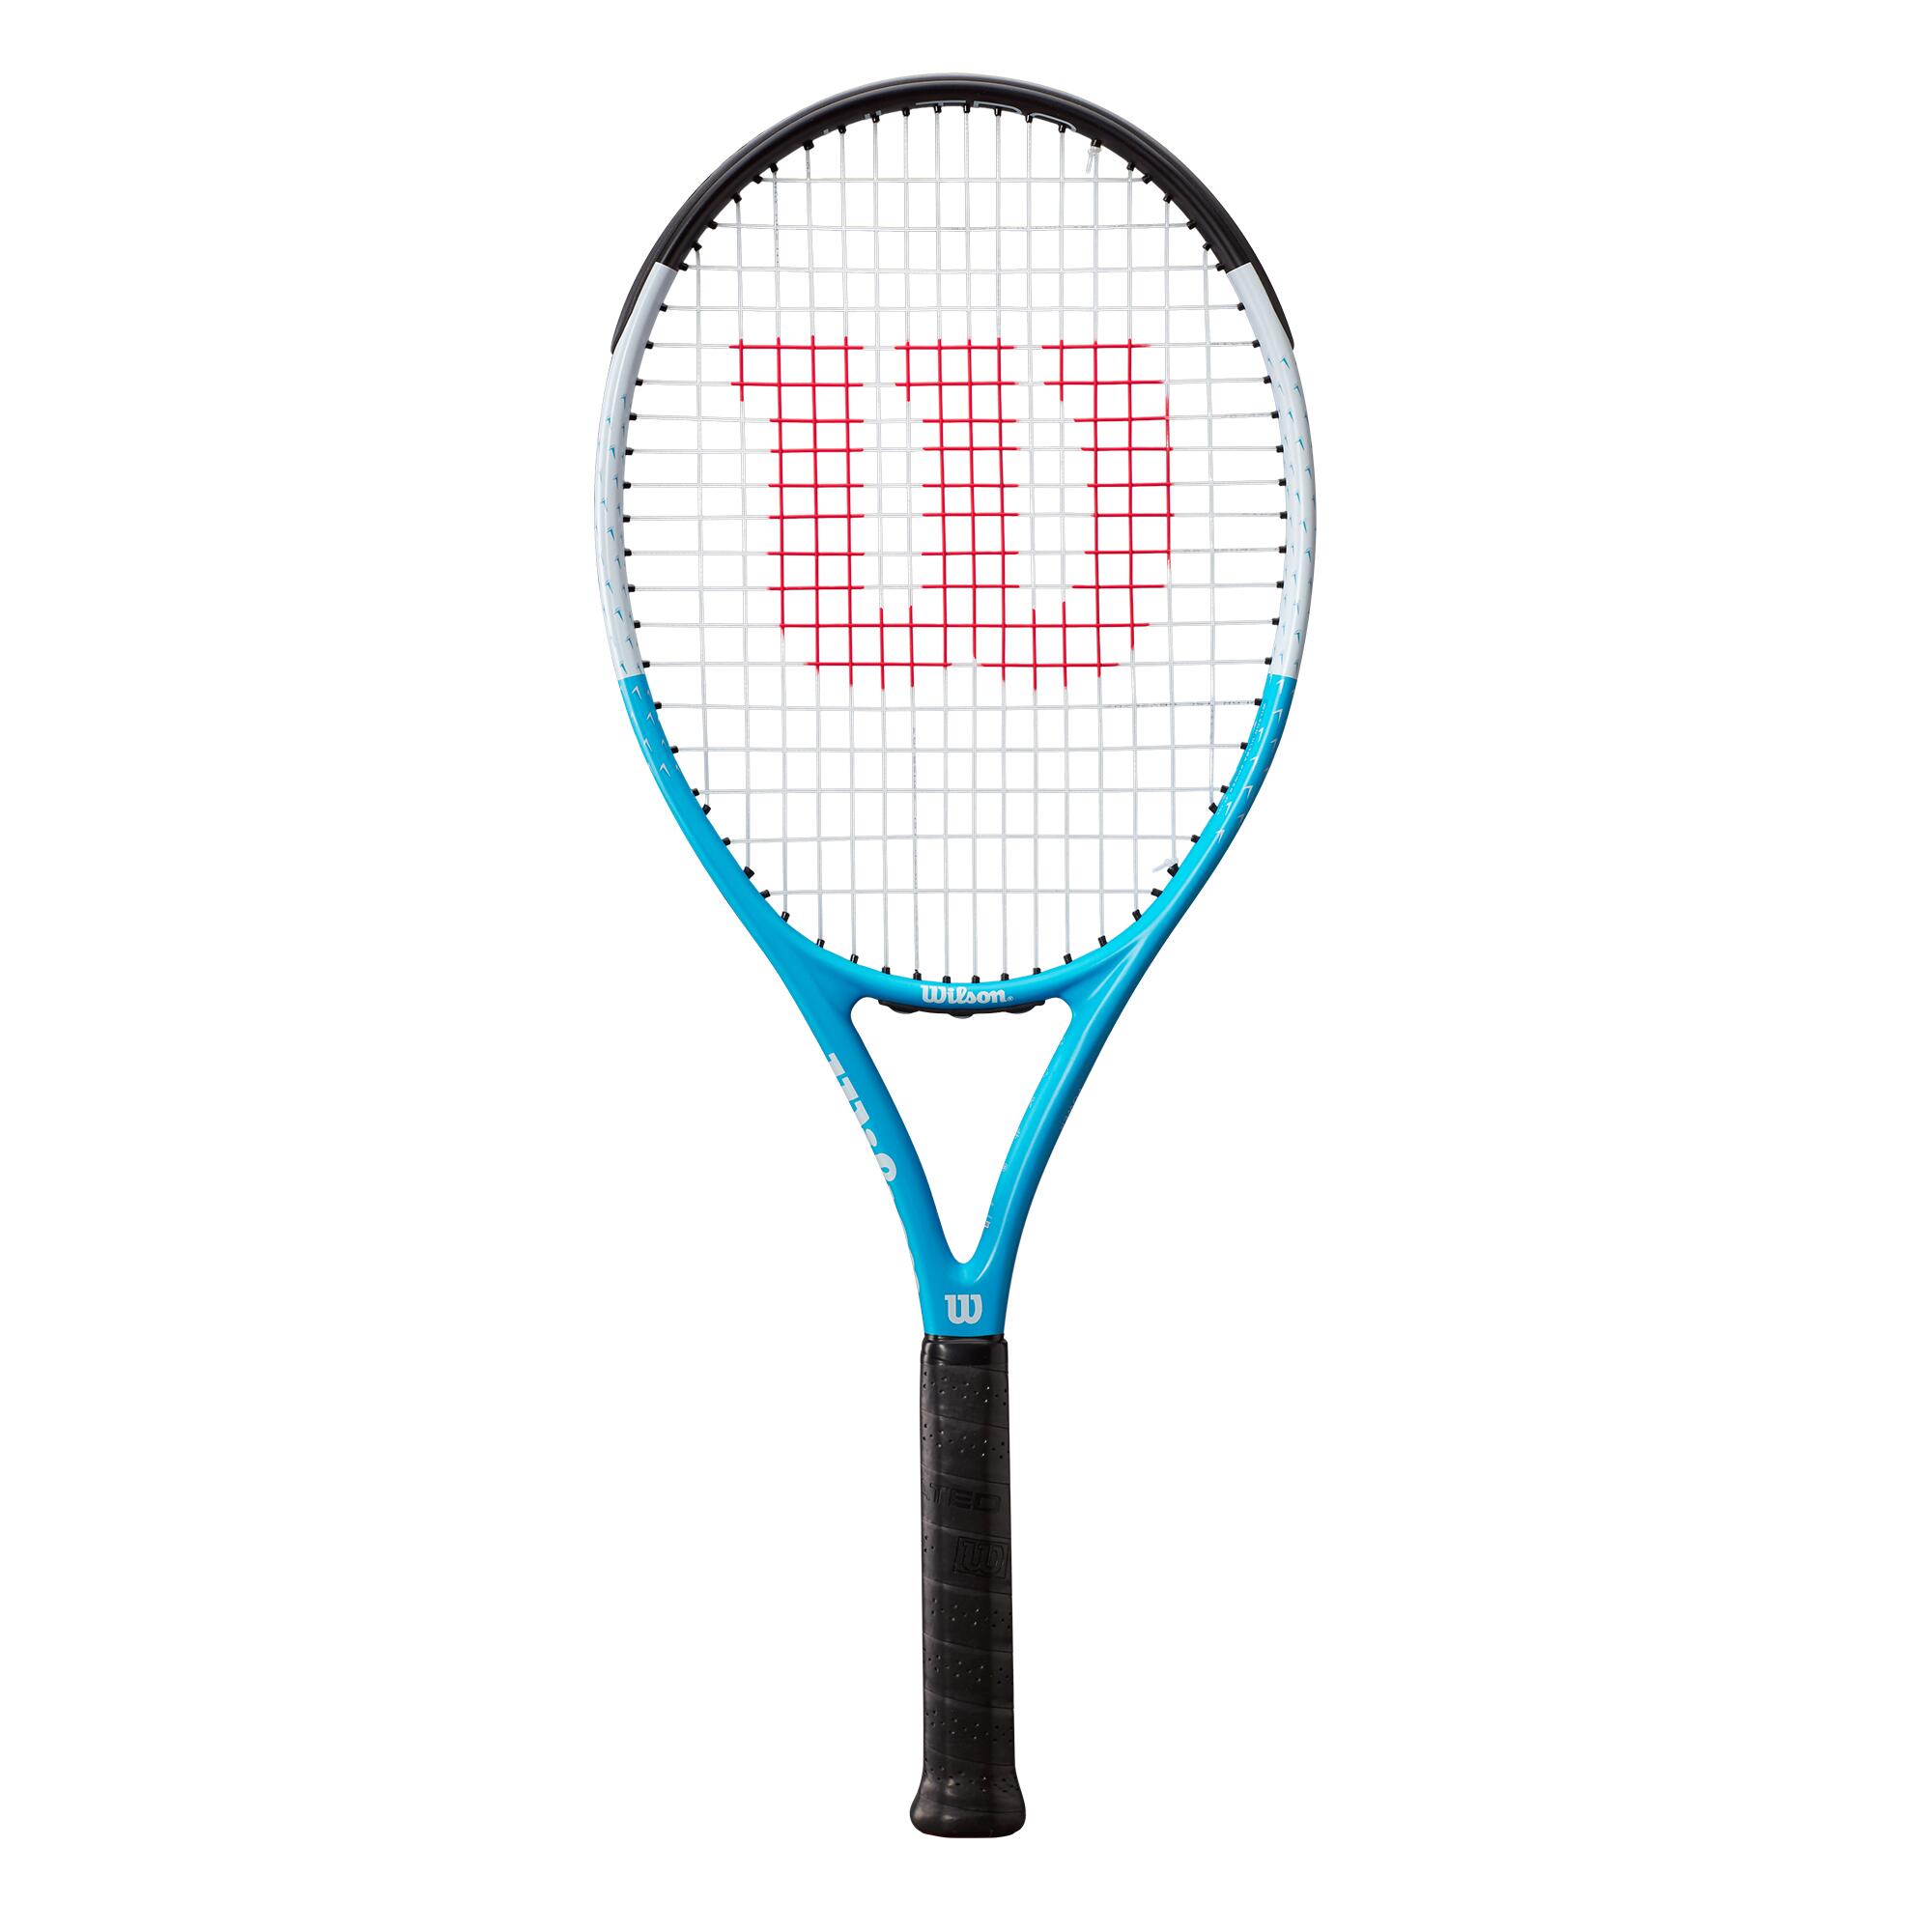 WILSON Wilson Ultra Power RXT 105 Tennis Racket